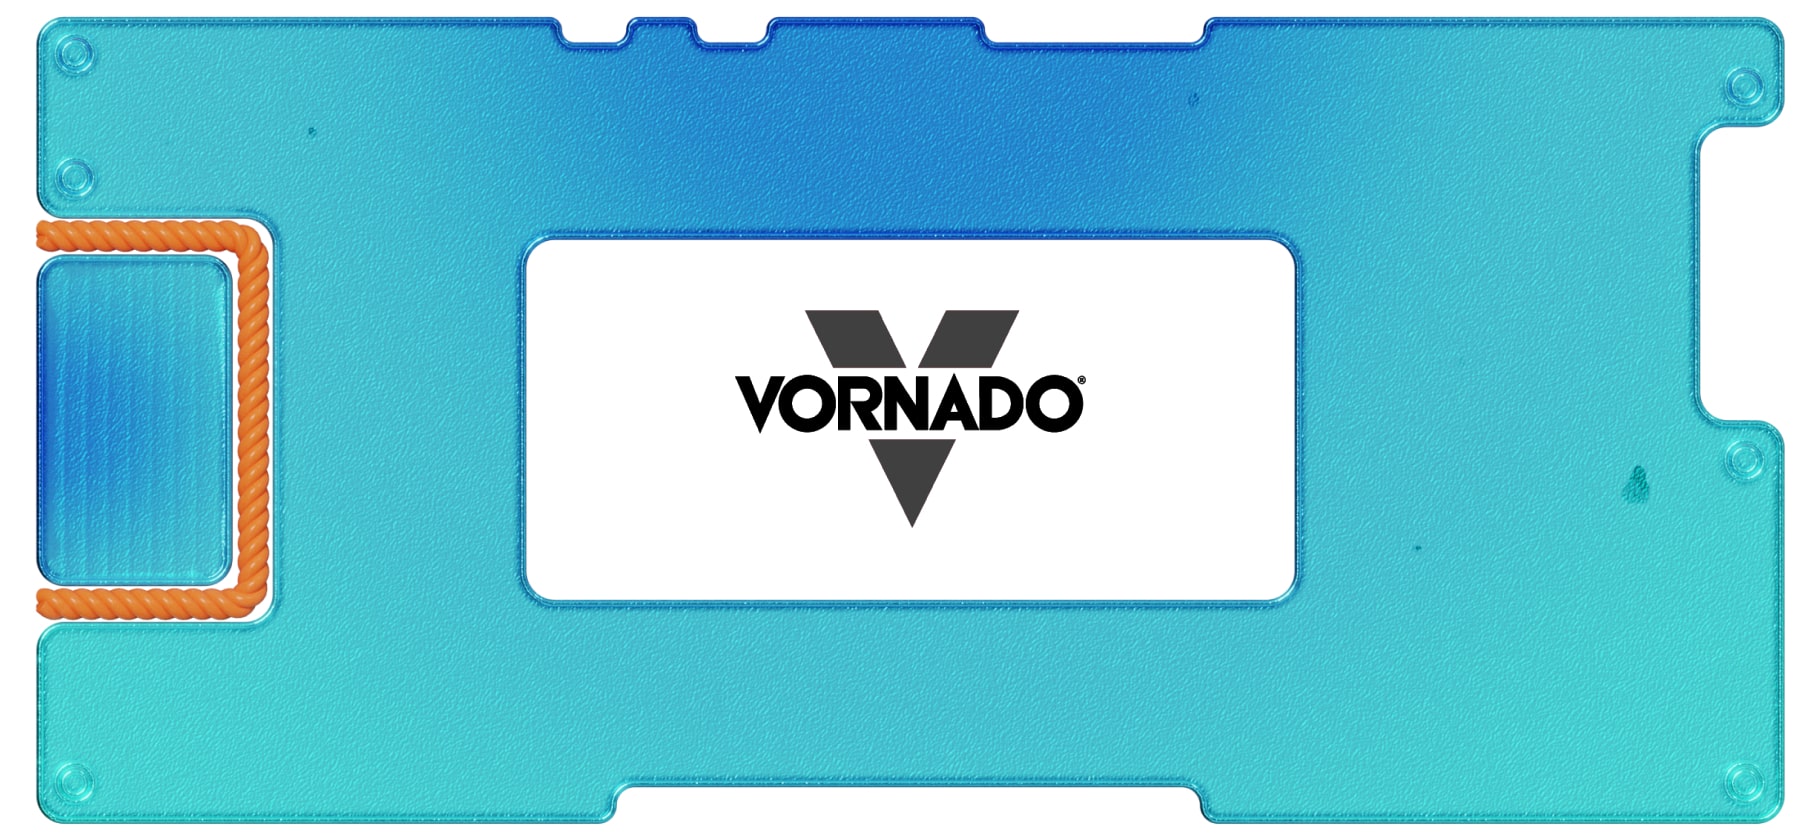 Обзор Vornado Realty: стоит ли вкладываться в фонд коммерческой недвижимости